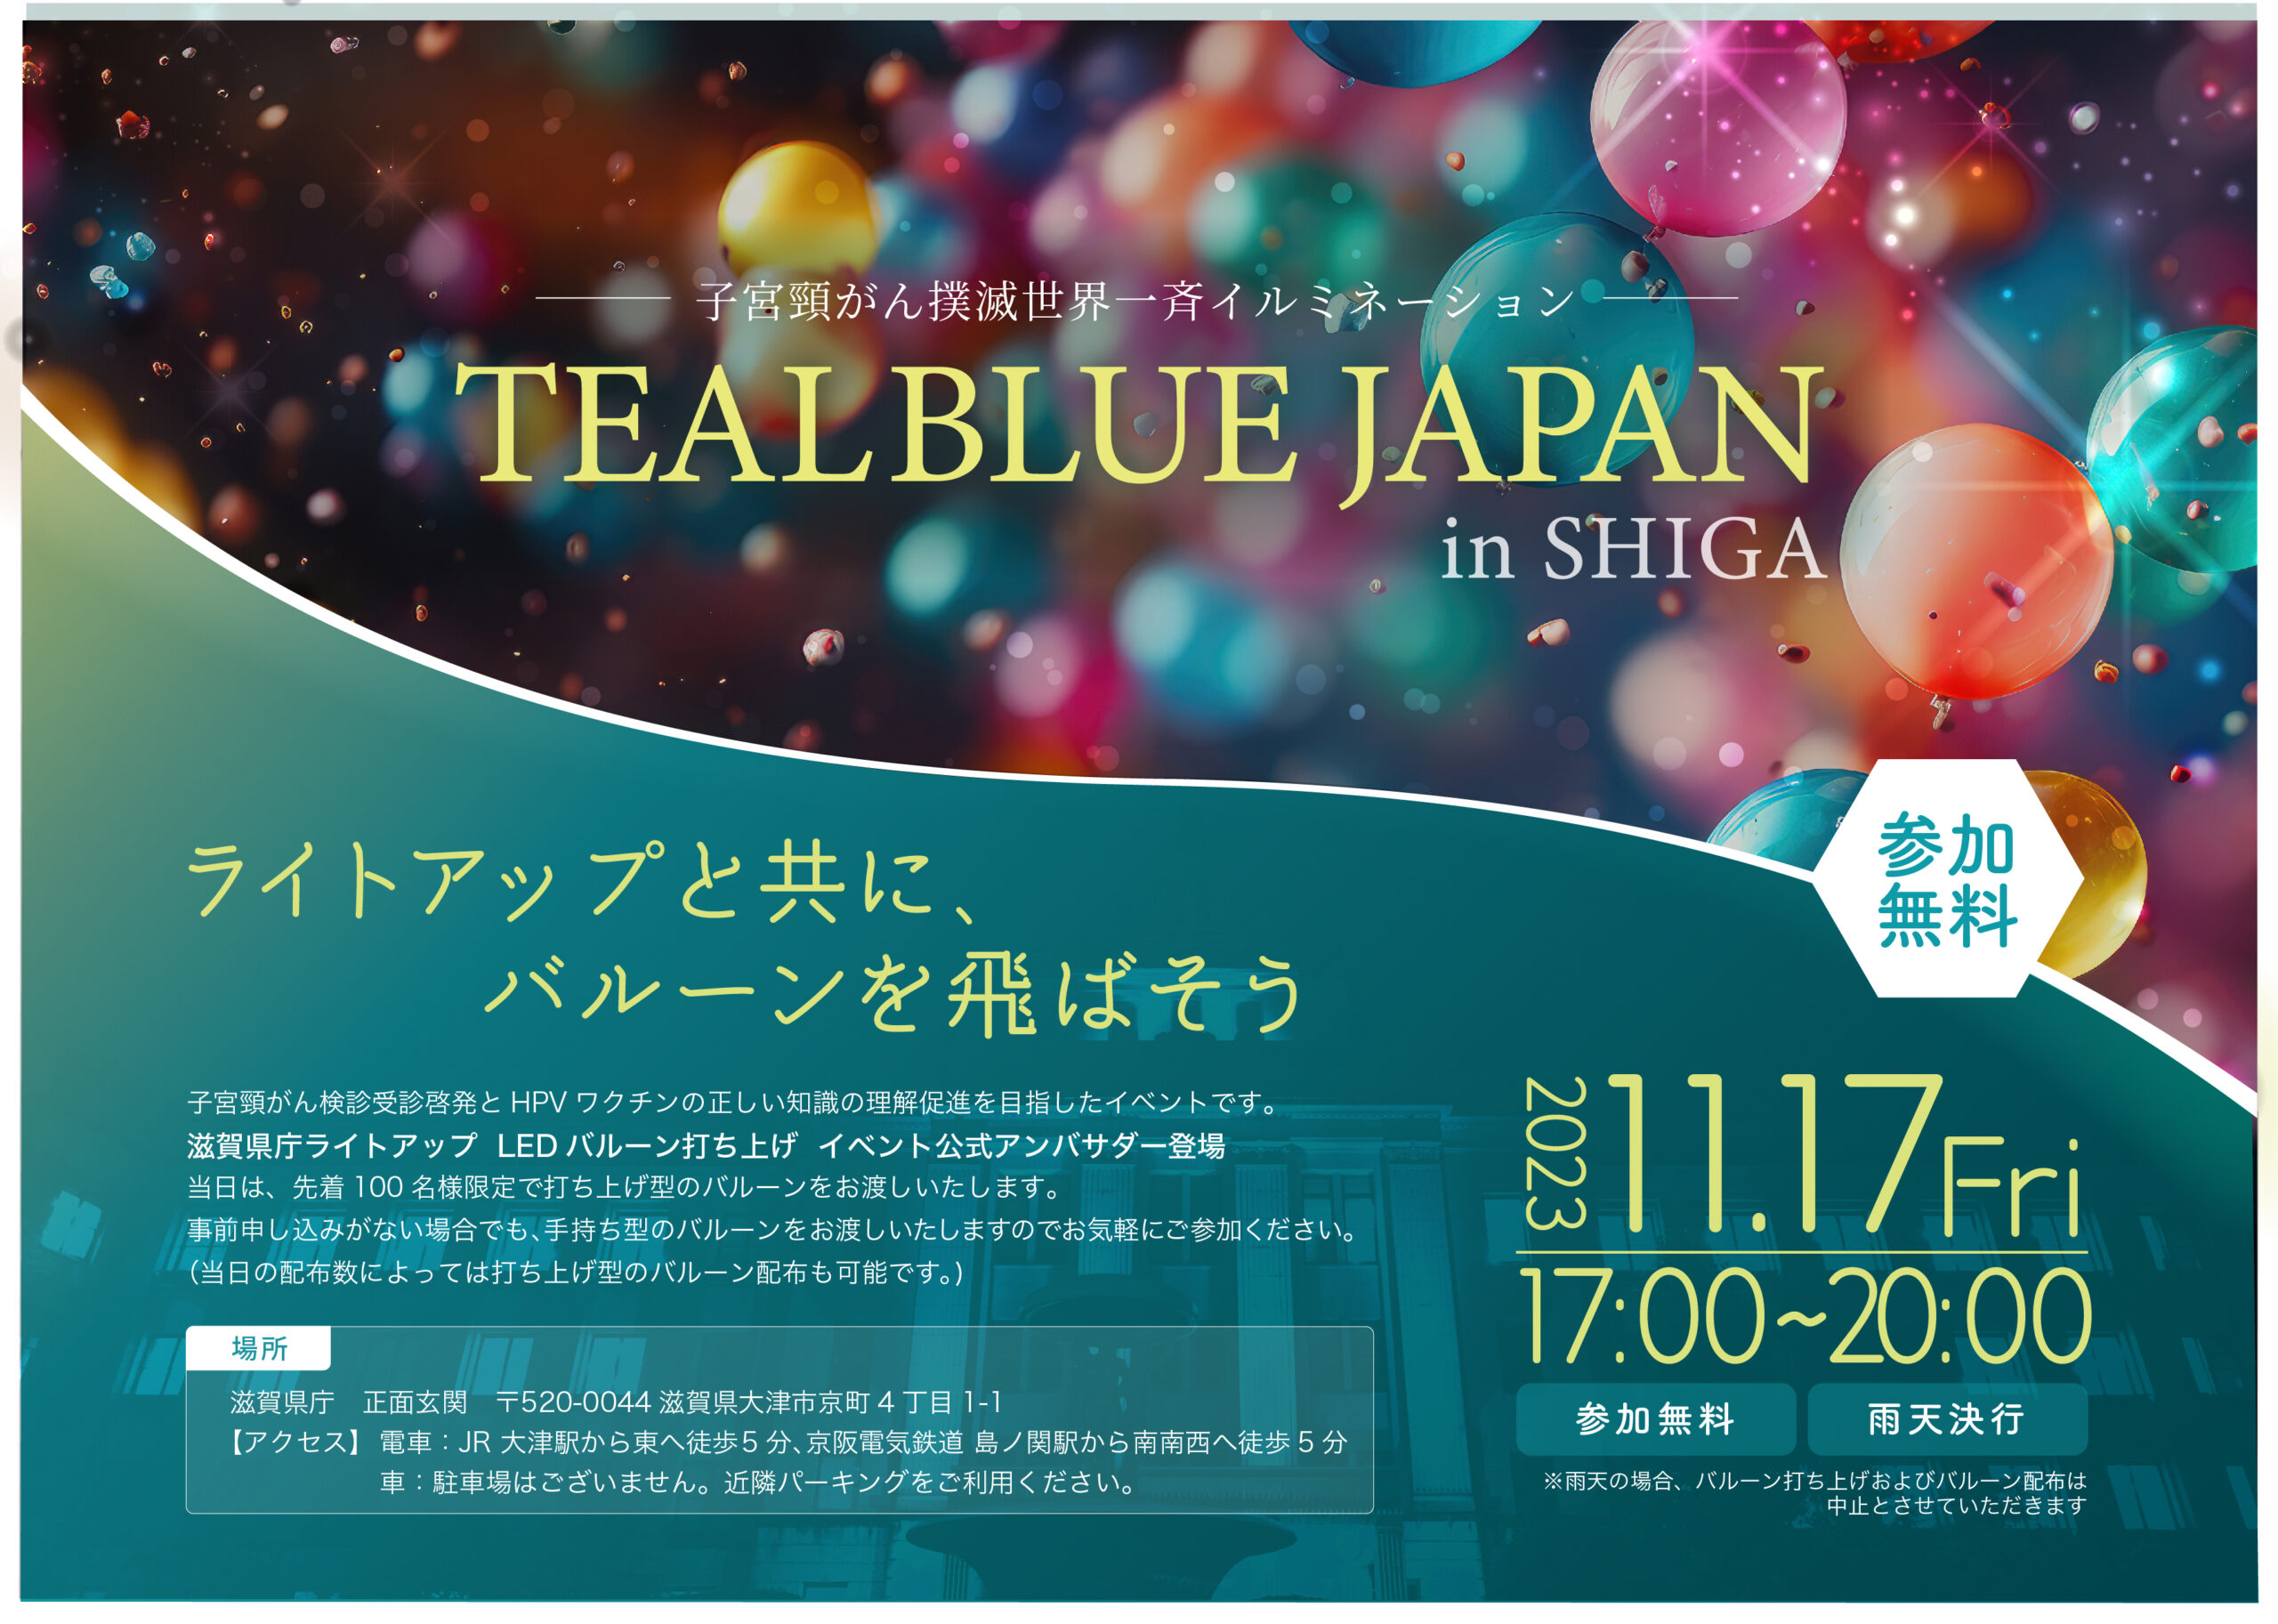 子宮頸がん撲滅世界一斉イルミネーションイベント「TEAL BLUE JAPAN in SHIGA」に共催企業として参加！